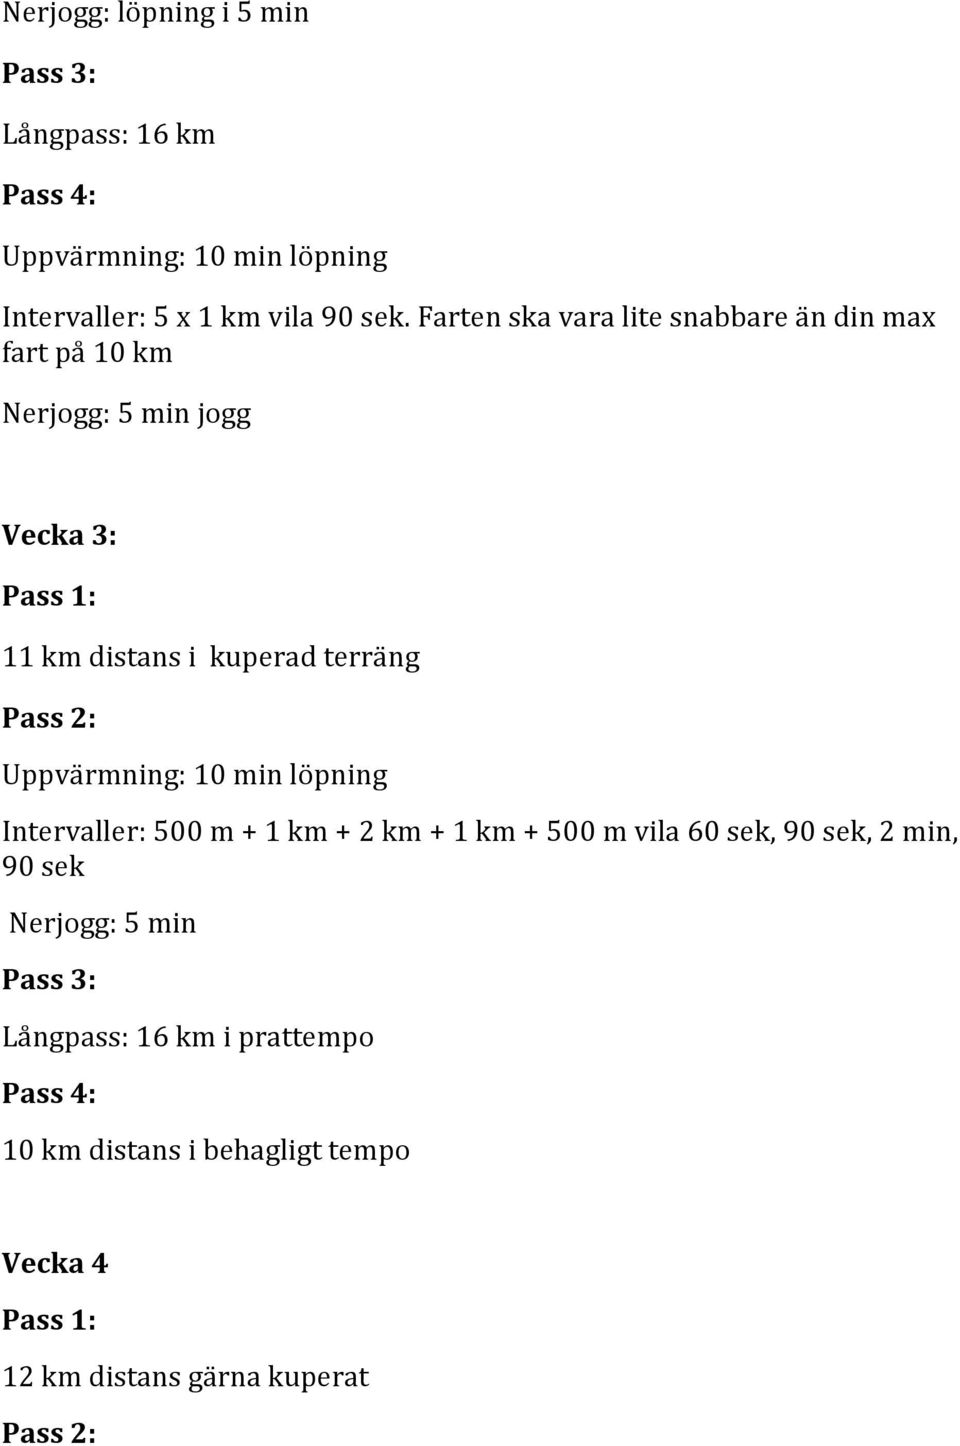 Pass 2: Uppvärmning: 10 min löpning Intervaller: 500 m + 1 km + 2 km + 1 km + 500 m vila 60 sek, 90 sek, 2 min, 90 sek